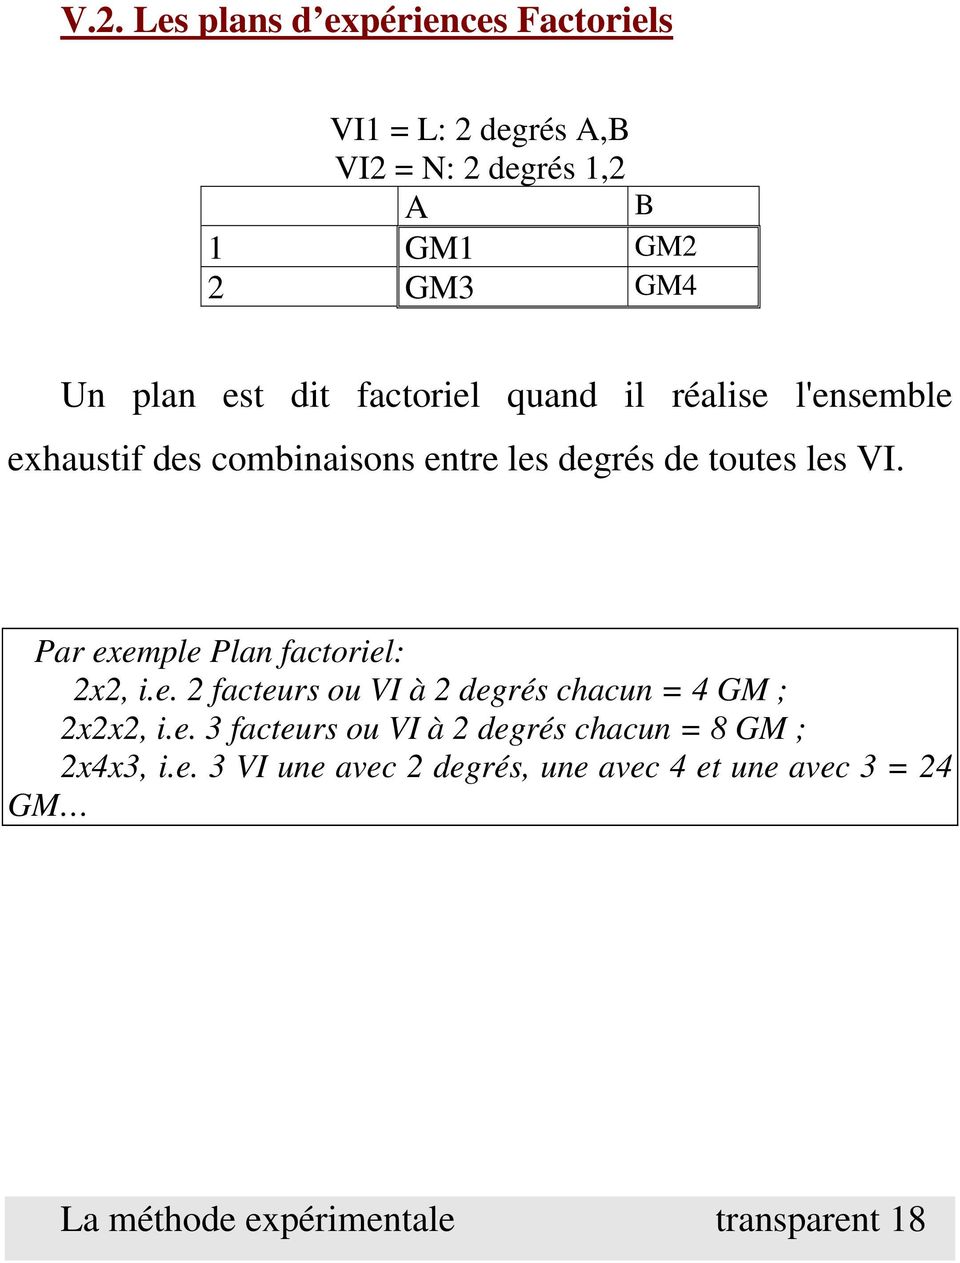 Par exemple Plan factoriel: 2x2, i.e. 2 facteurs ou VI à 2 degrés chacun = 4 GM ; 2x2x2, i.e. 3 facteurs ou VI à 2 degrés chacun = 8 GM ; 2x4x3, i.